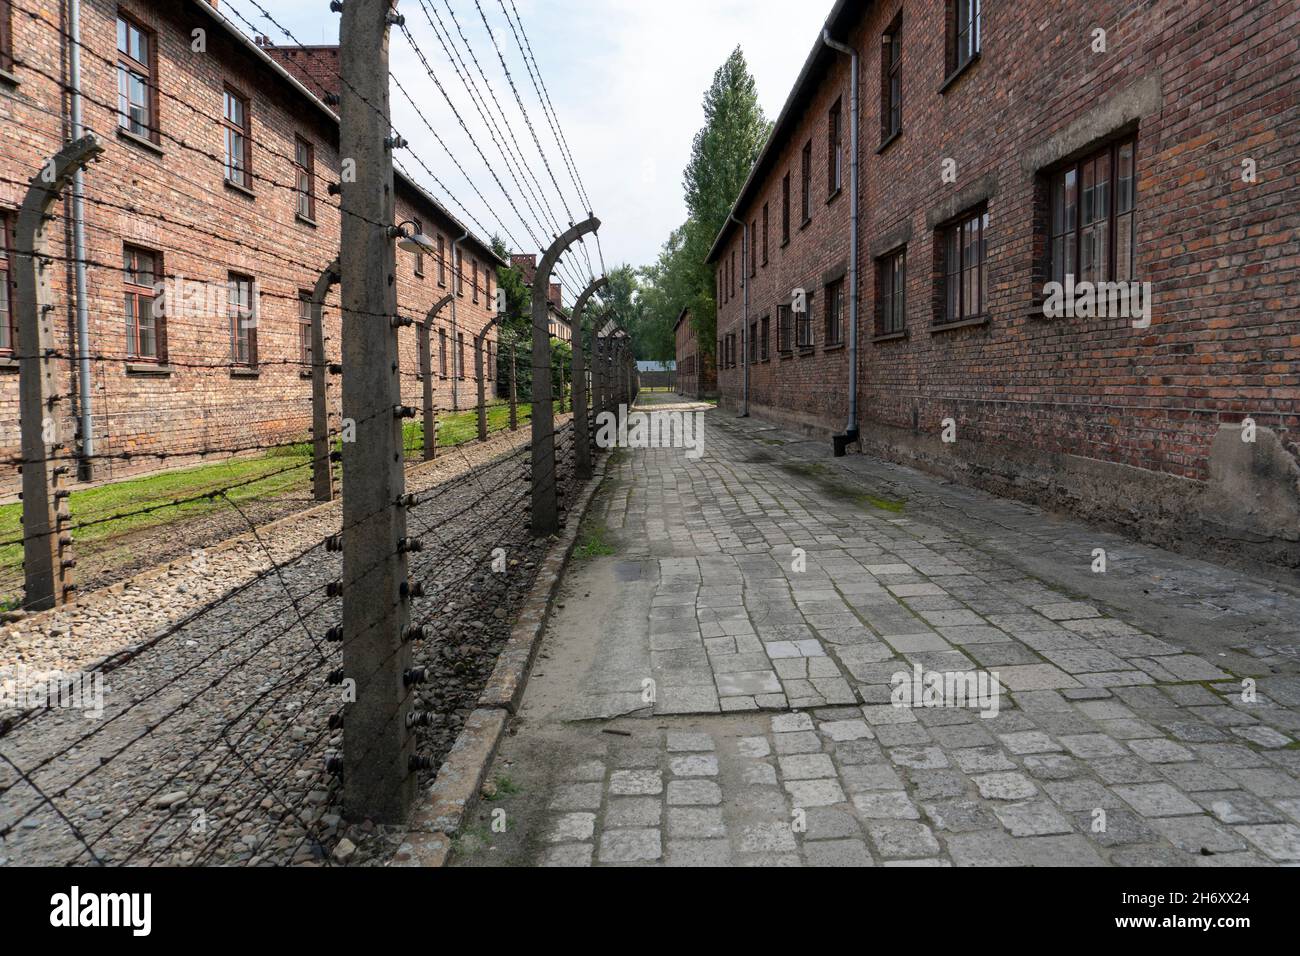 Pologne, petite Pologne, village d'Oswiecim, Auschwitz Birkenau, camp allemand de concentration et d'extermination nazi (1940-1945) Banque D'Images